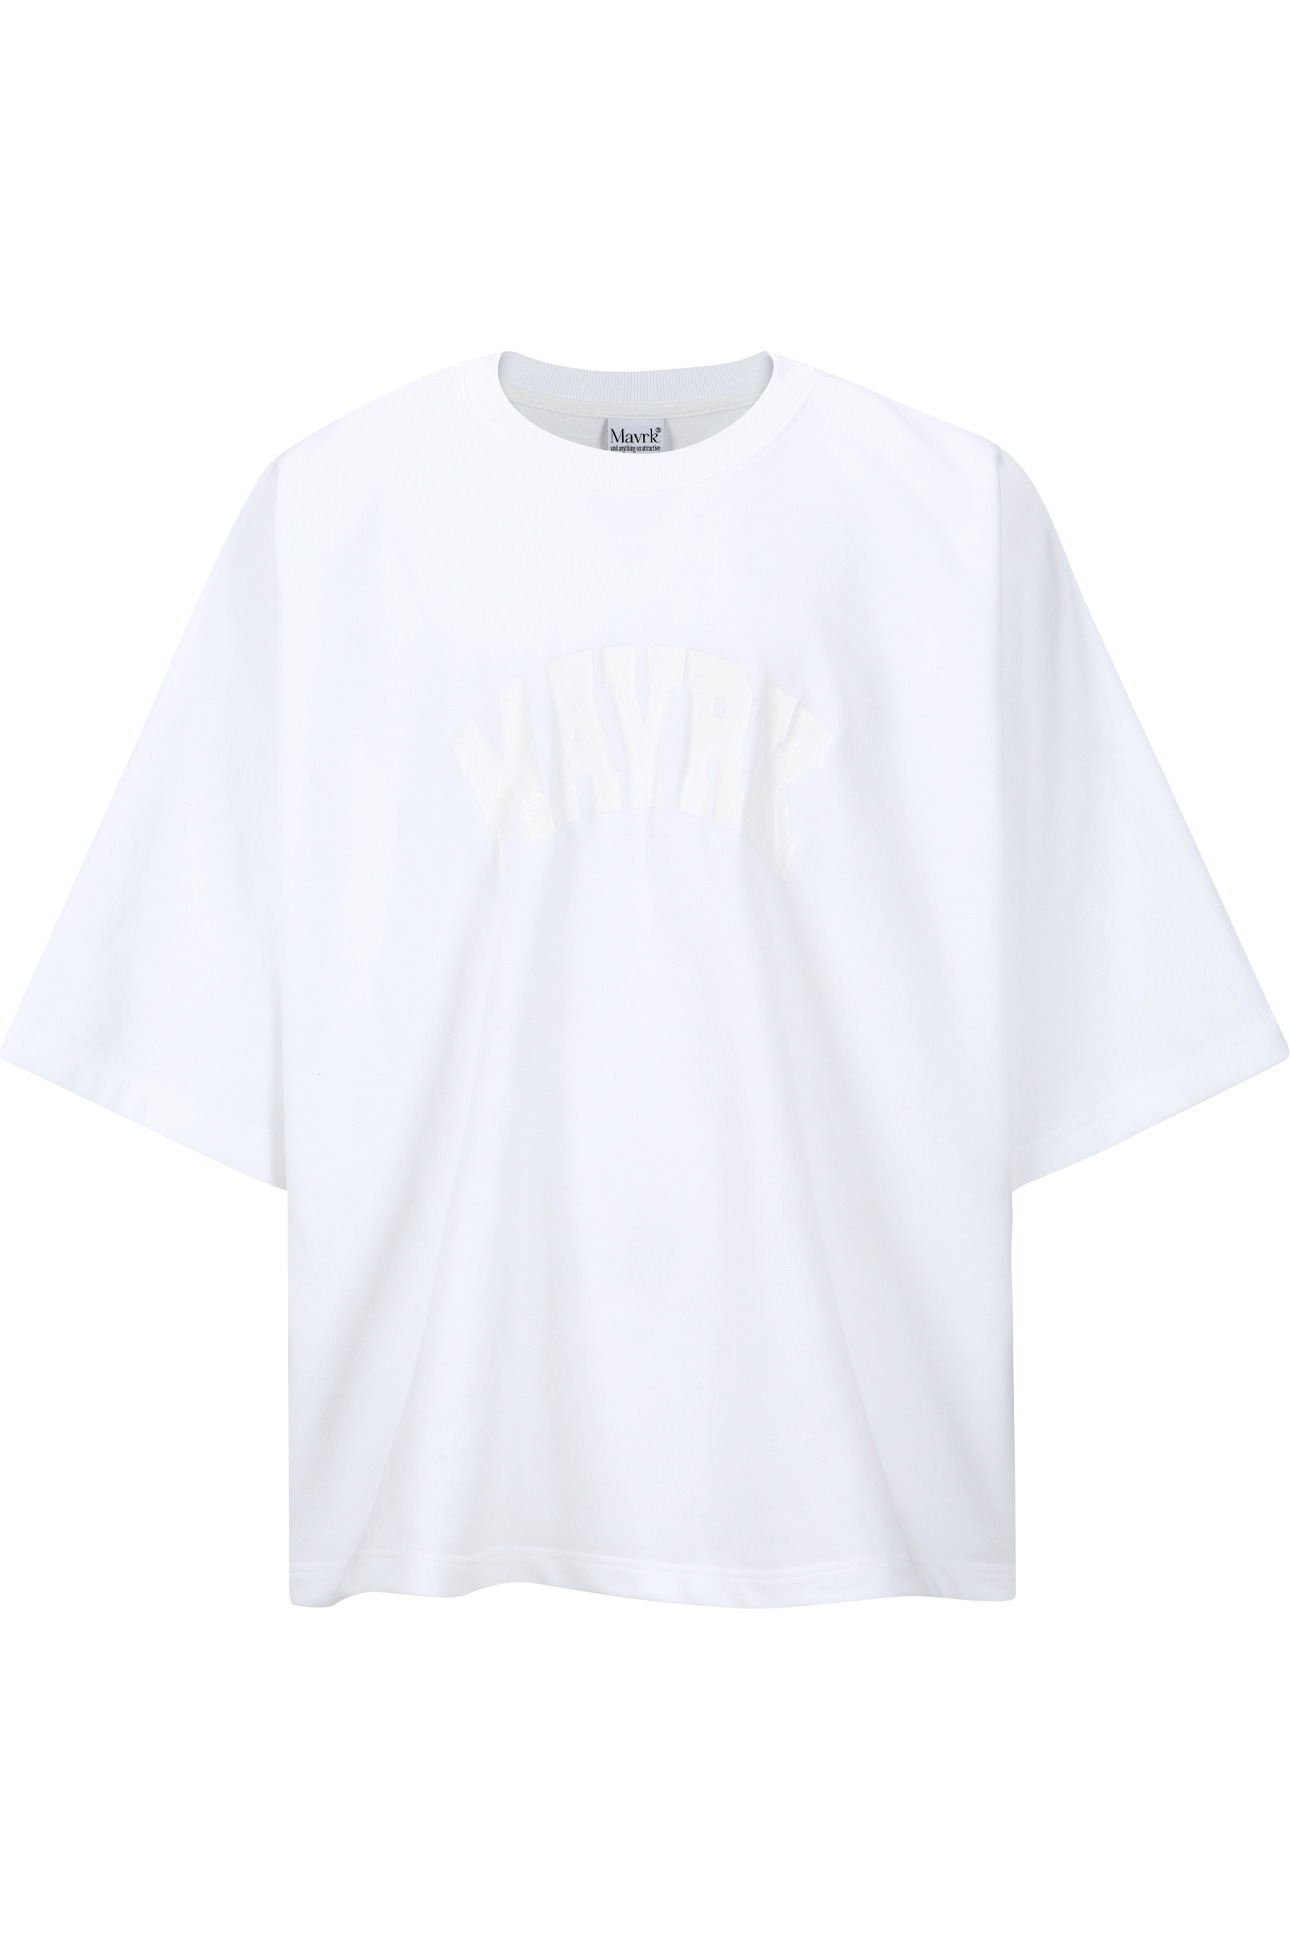 M 로고 오프 오버핏 7부 티셔츠 화이트